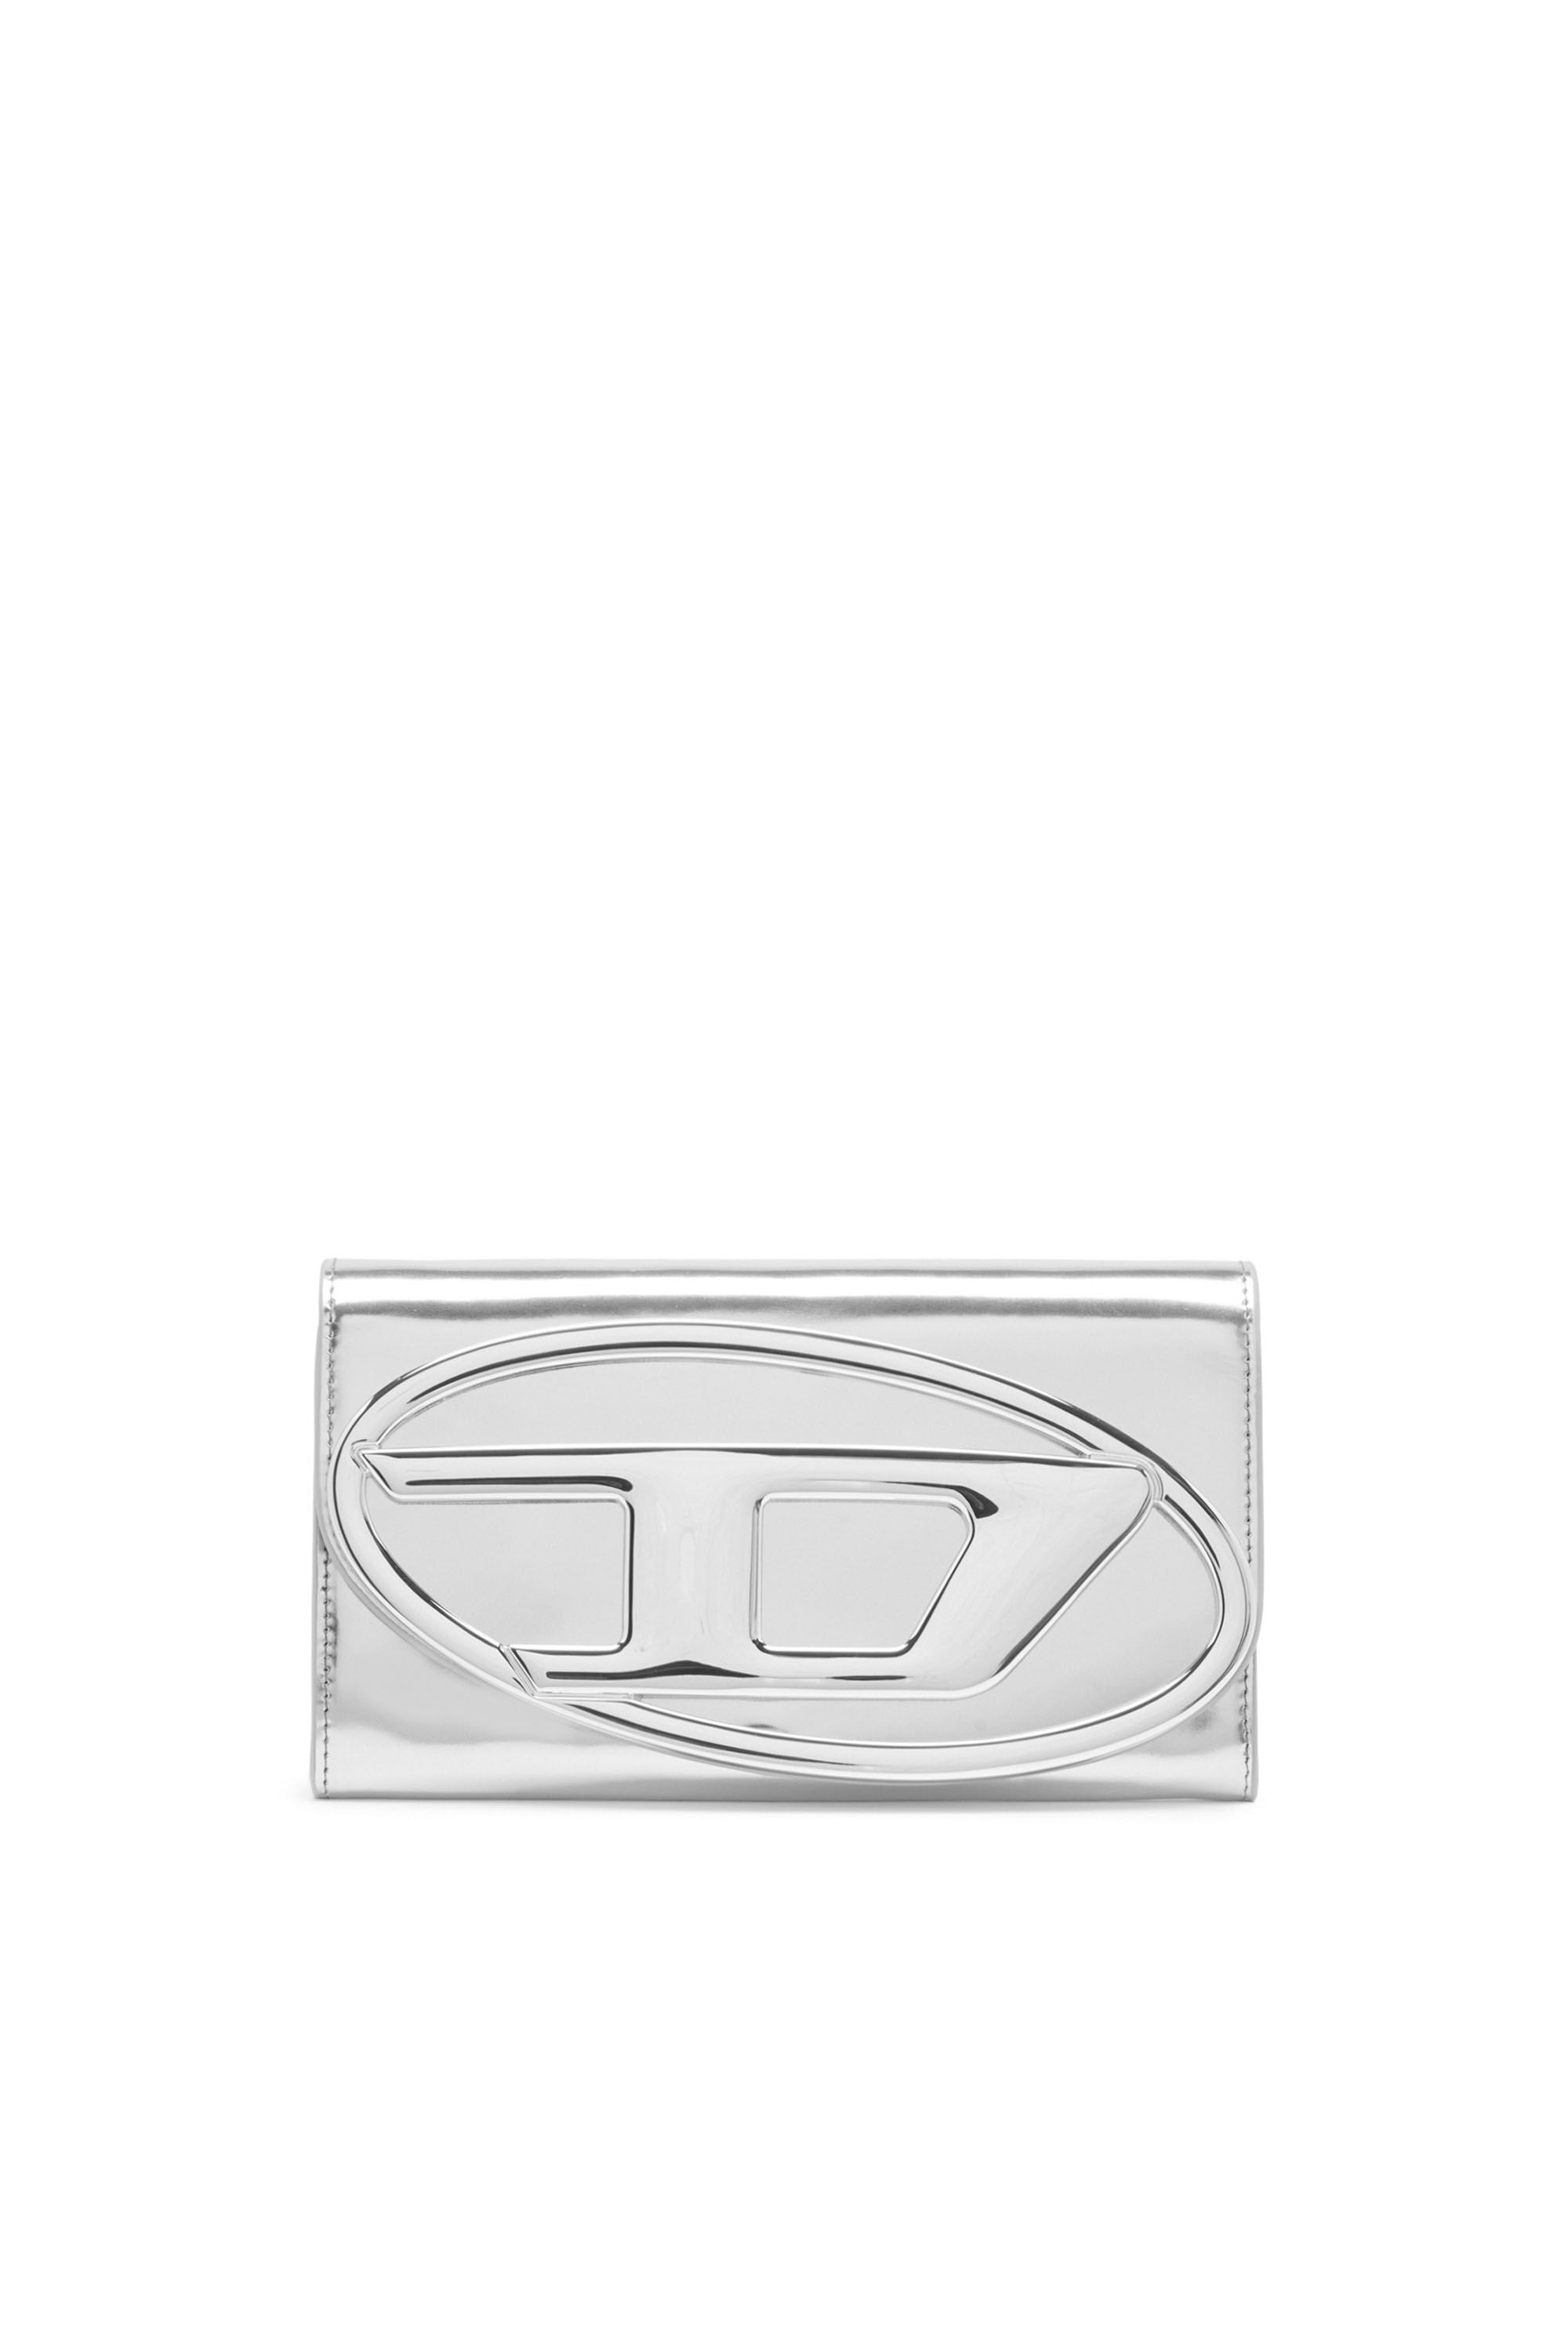 Diesel - LONG WALLET ZIP XXL, Woman Wallet purse in metallic leather in Silver - Image 1